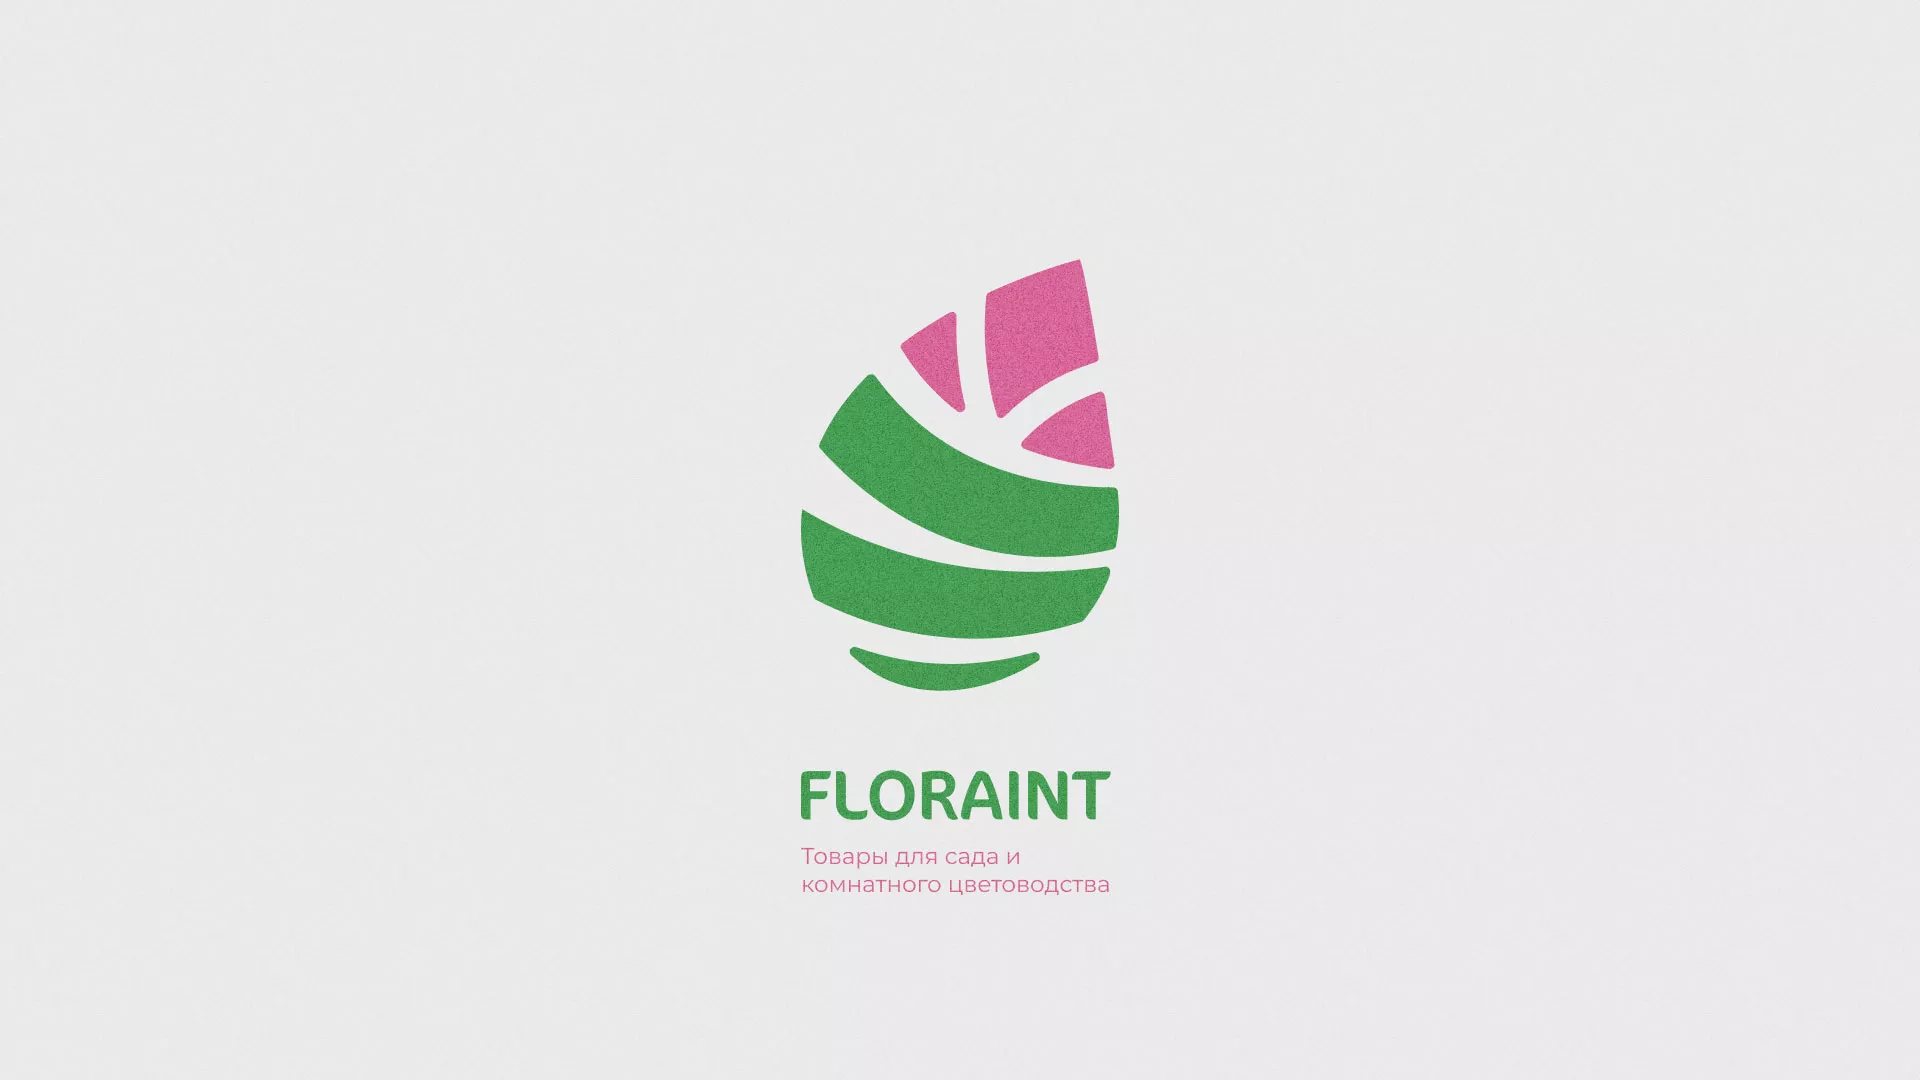 Разработка оформления профиля Instagram для магазина «Floraint» в Балтийске